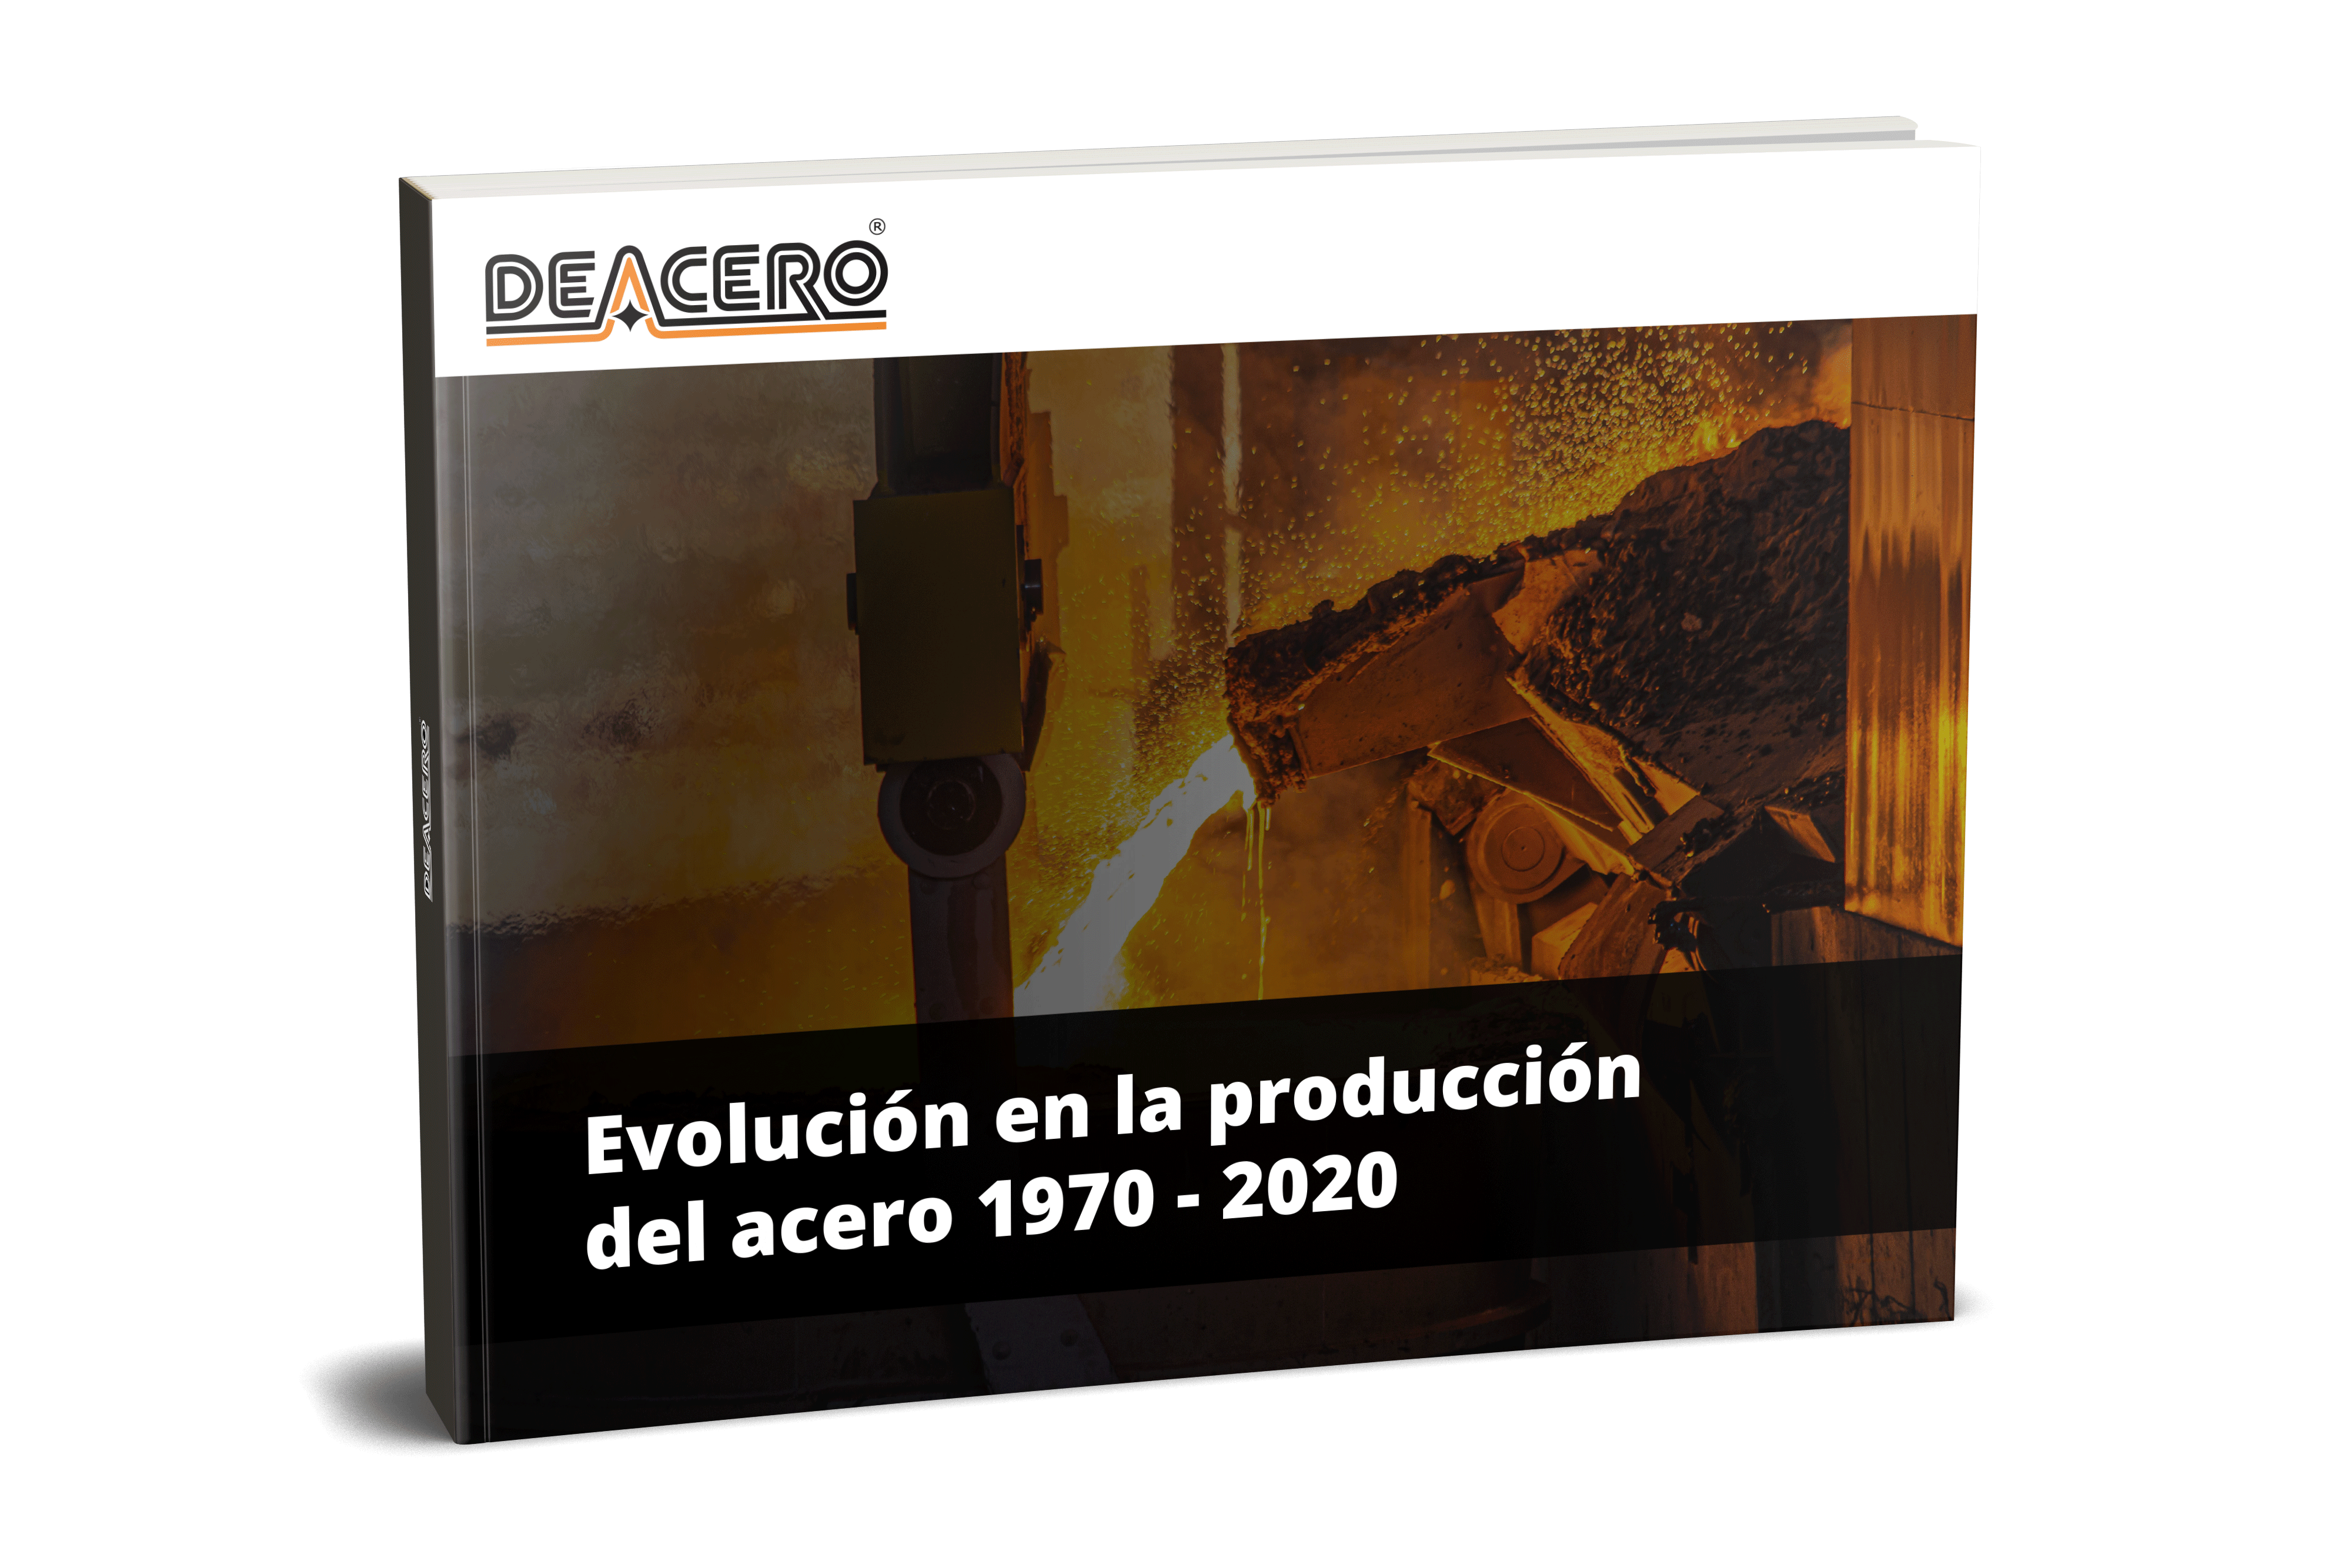 evolucion-en-la-produccion-del-acero-1970-2020-nueva-portada_deaceromockup2